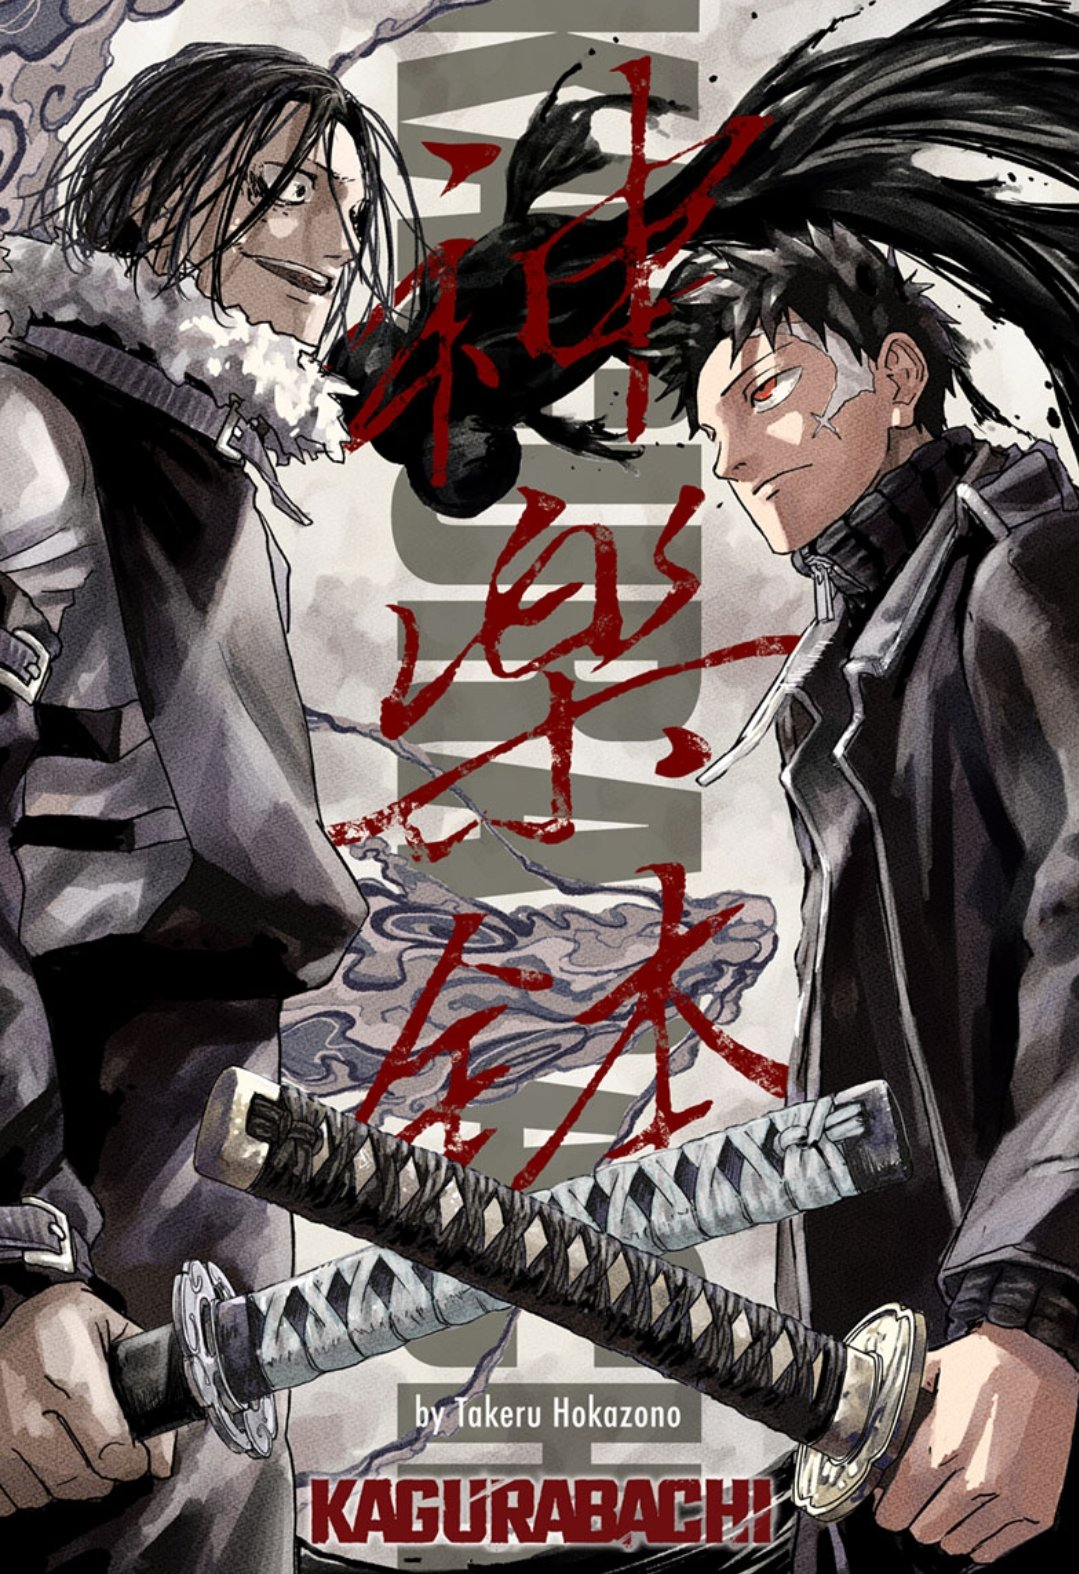 Kagurabachi manga color page